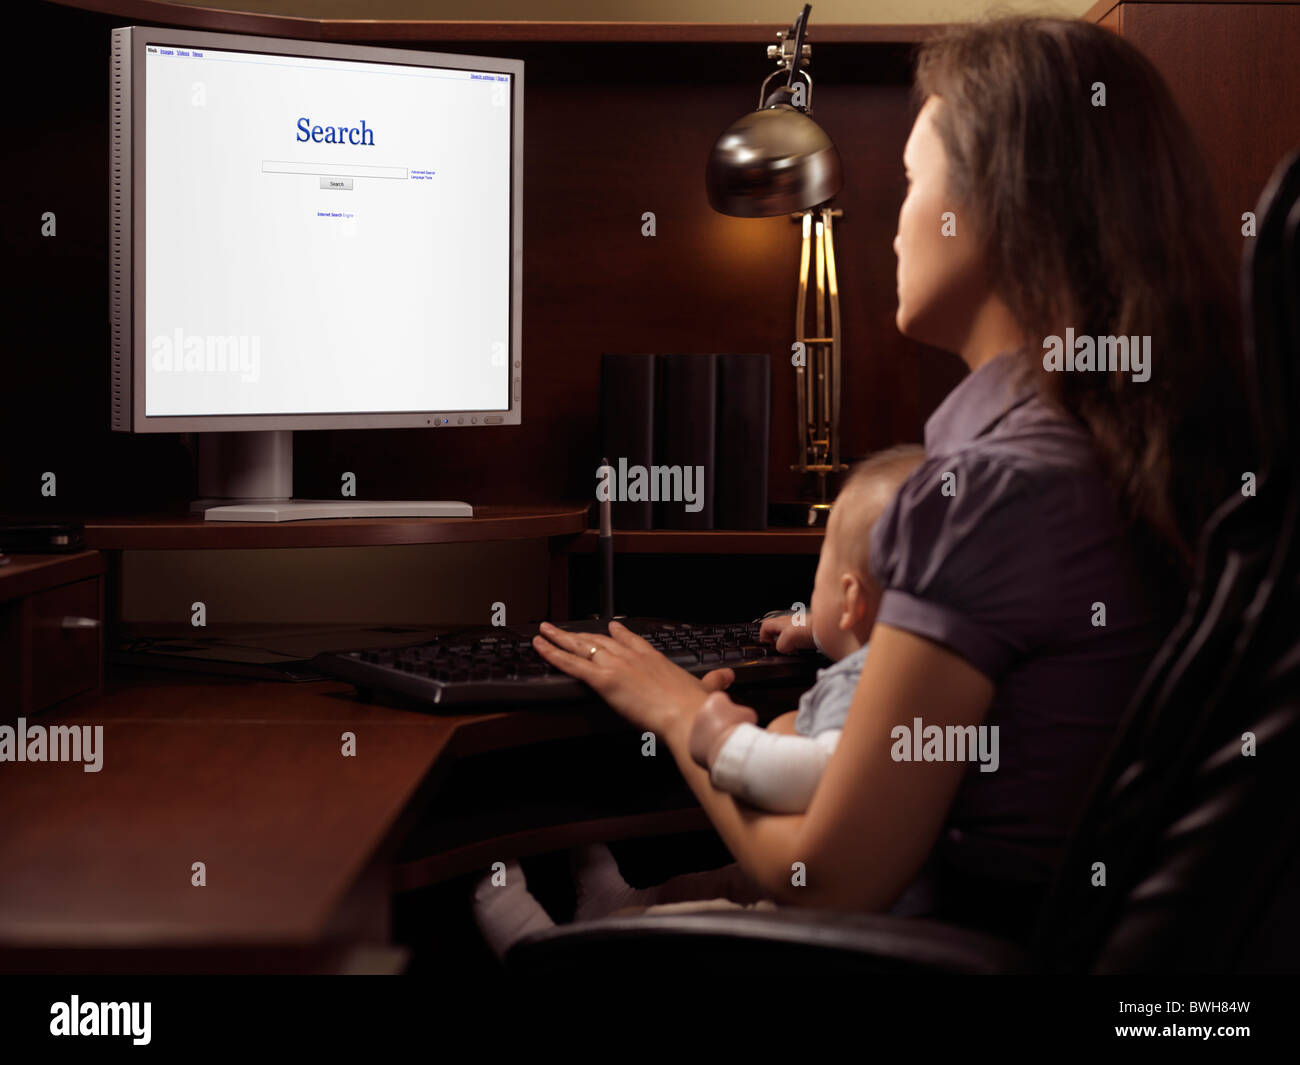 Jeune femme avec un bébé assis à un bureau informatique avec internet Moteur de recherche sur l'affichage Banque D'Images